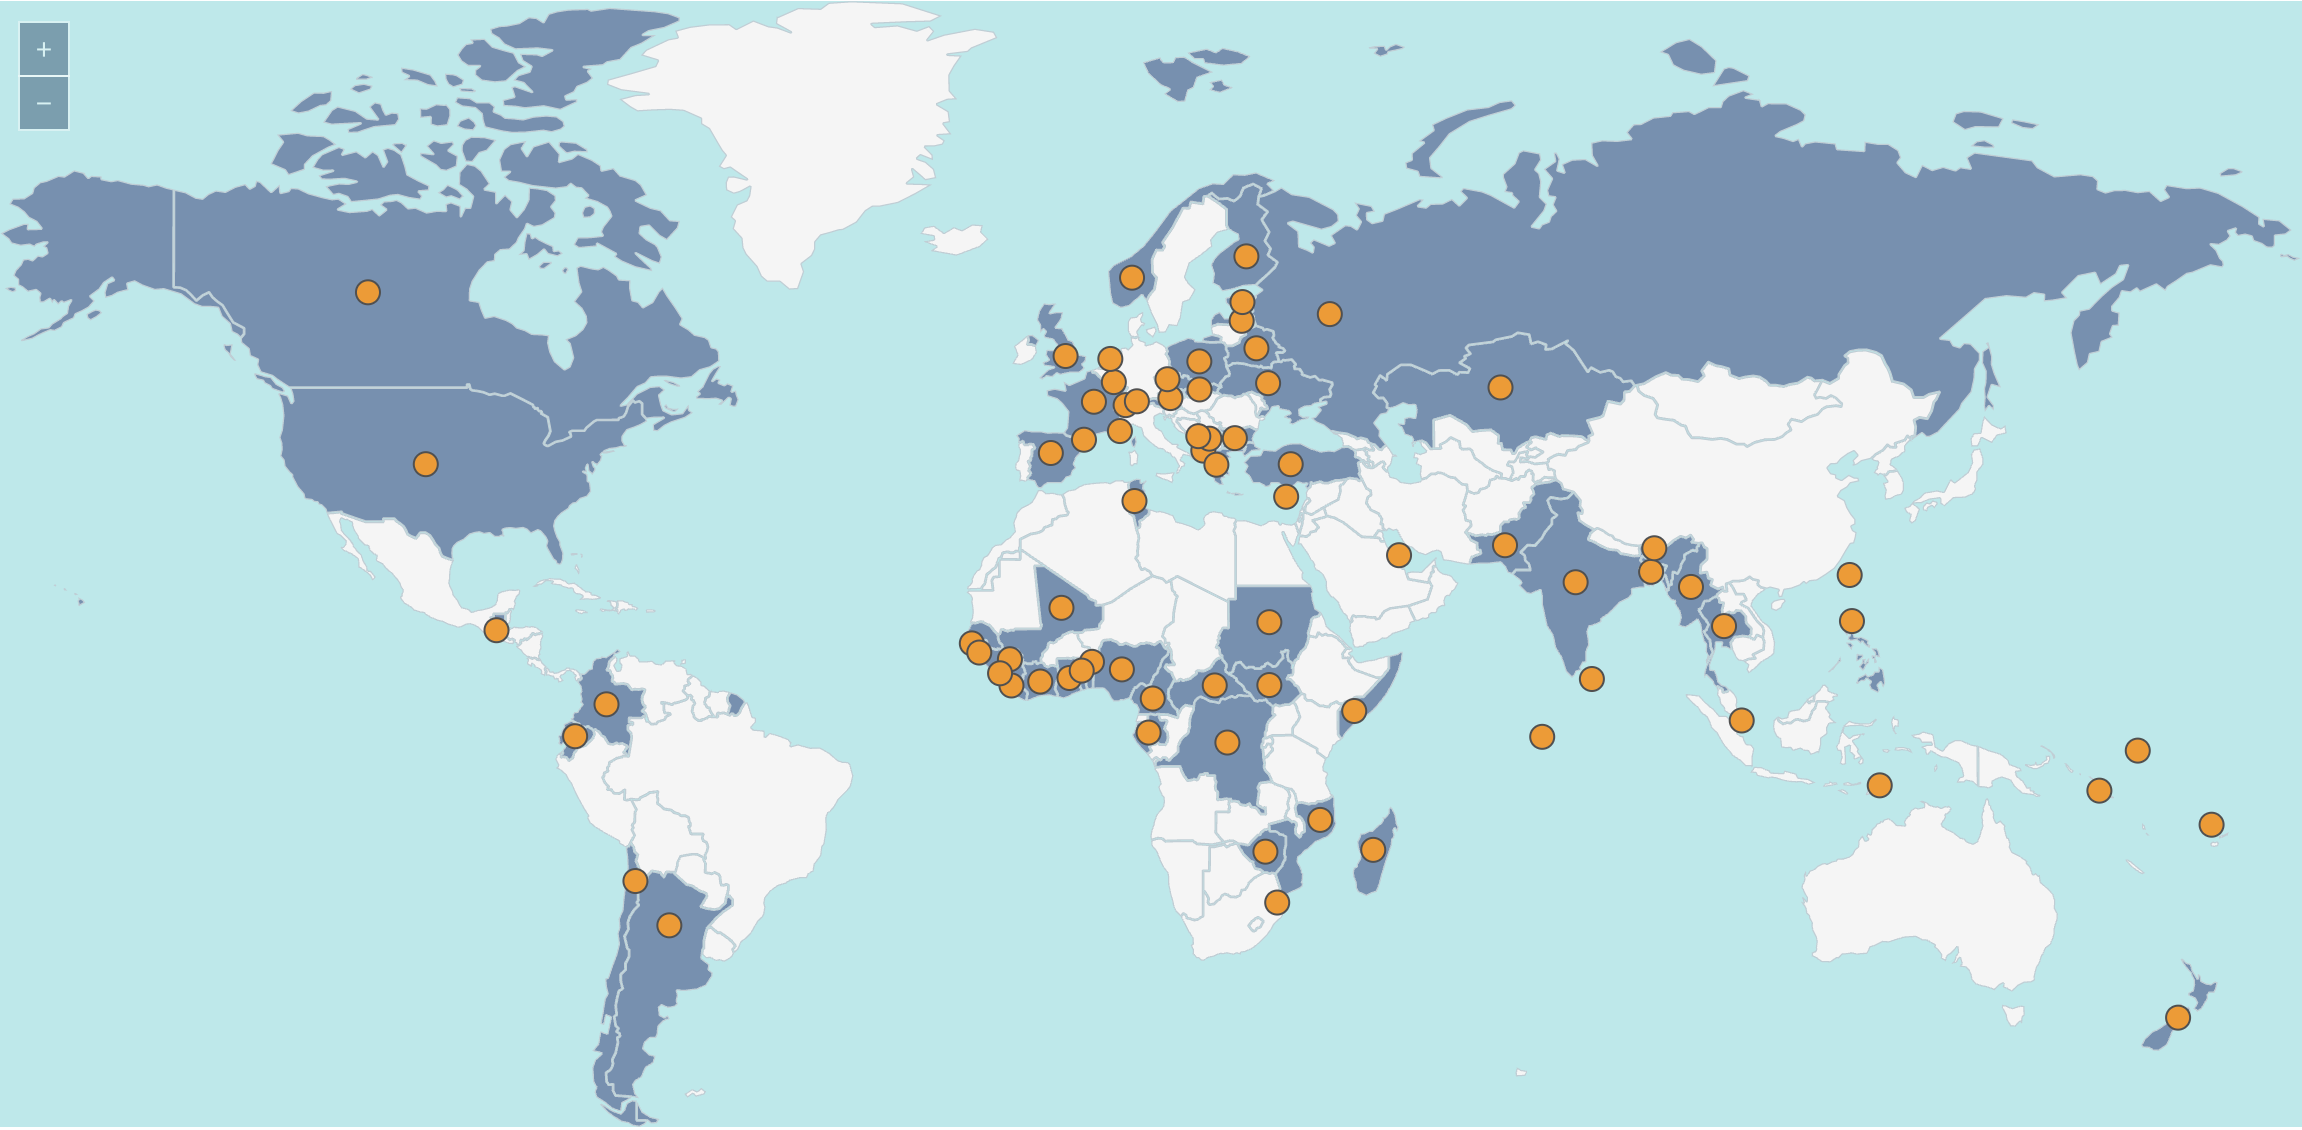 Interaktive Karte zu internationalen Wahlen